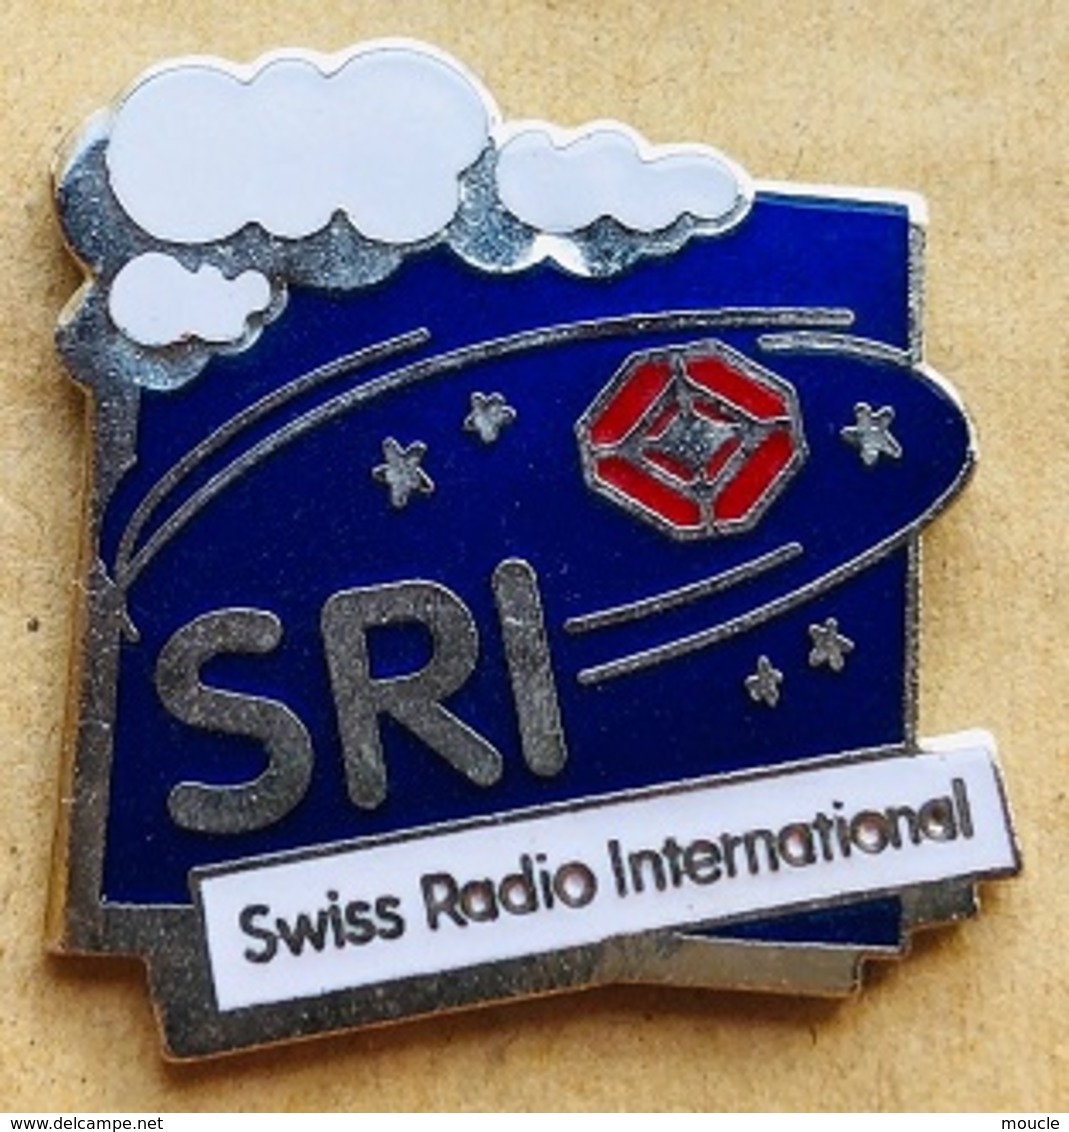 SRI - SWISS RADIO INTERNATIONAL - LOGO - NUAGE - CLOUD - ETOILES - STARS - RADIO SUISSE INTERNATIONALE   - (23) - Media